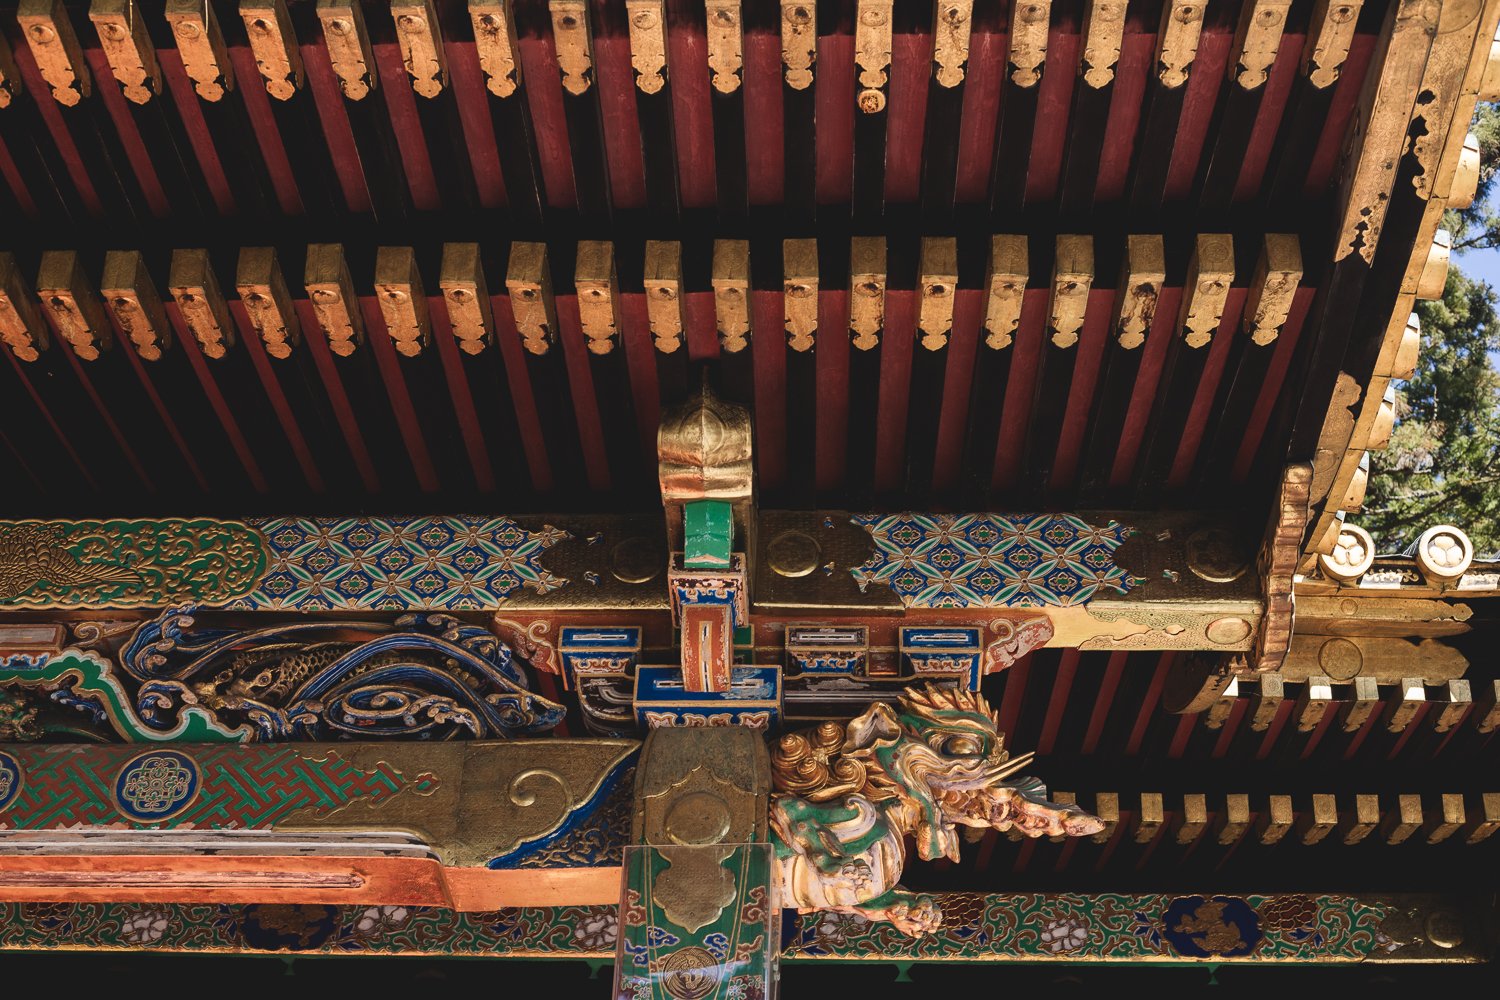 Détail d'une sous-toiture d'un bâtiment du sanctuaire. Les poutres sont couvertes de motifs géométriques peints de couleurs vives. Une d'elle se termine en formant une tête de dragon sculptée.